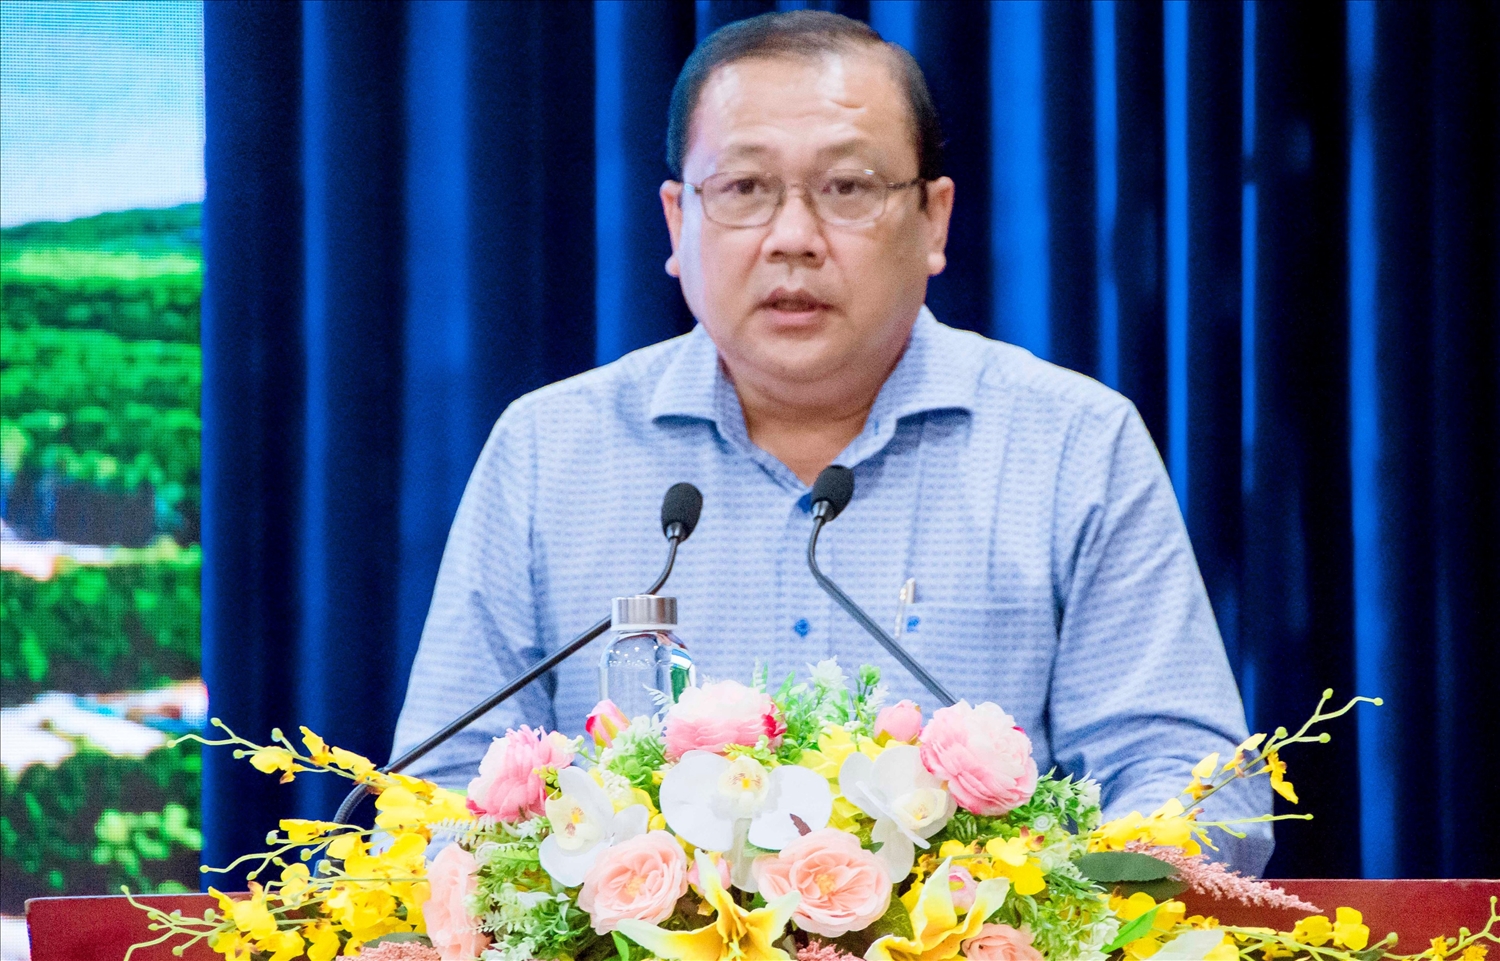 Ông Nguyễn Văn Đen, Phó Giám đốc Sở Thông tin và Truyền thông tỉnh Cà Mau báo cáo công tác thông tin tuyên truyền về Cà Mau trên báo chí và các phương tiện thông tin đại chúng năm 2022.